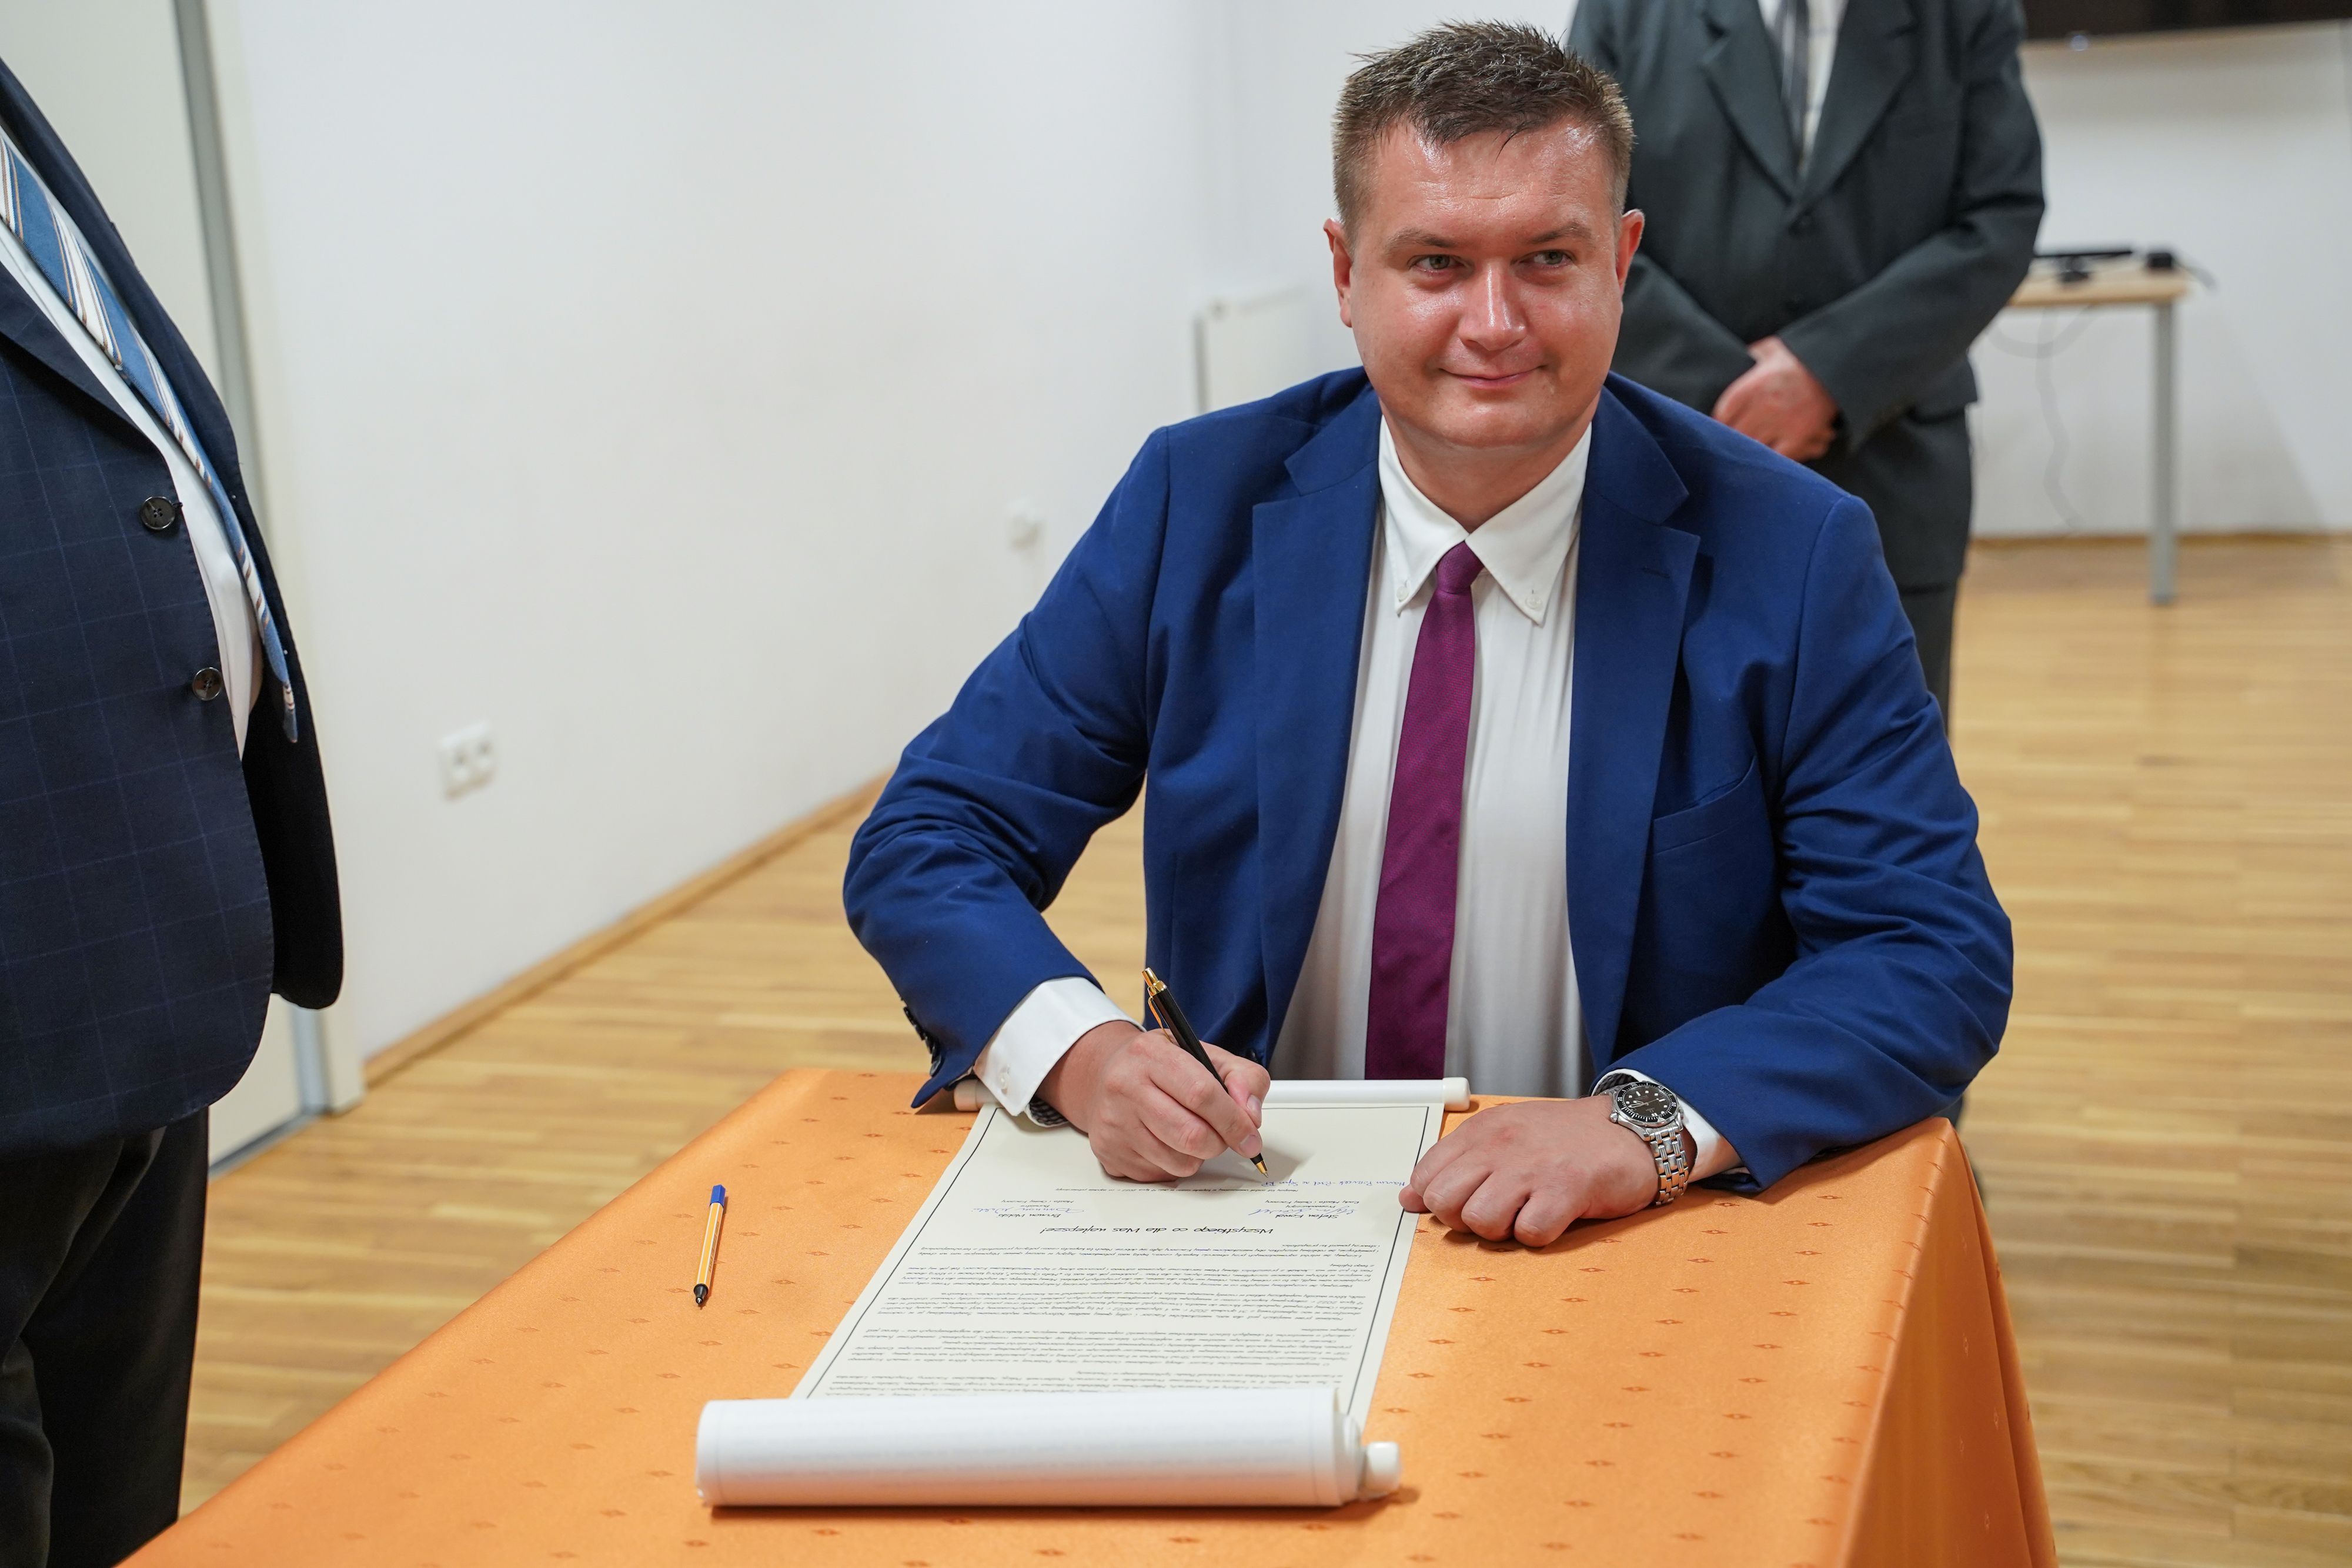 Na zdjęciu widać podpisującego się na liście poseł - Pan Marcin Porzucek.